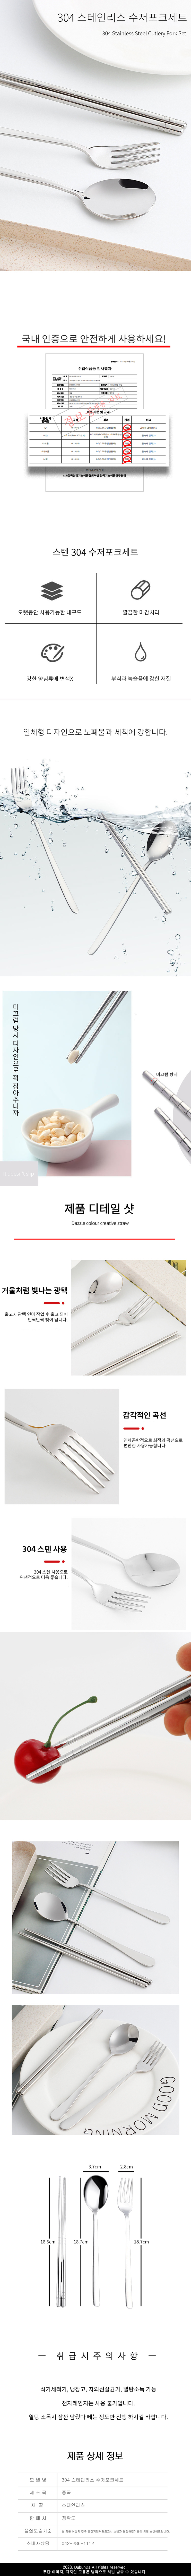 Stainless Steel Spoon Fork Set.jpg